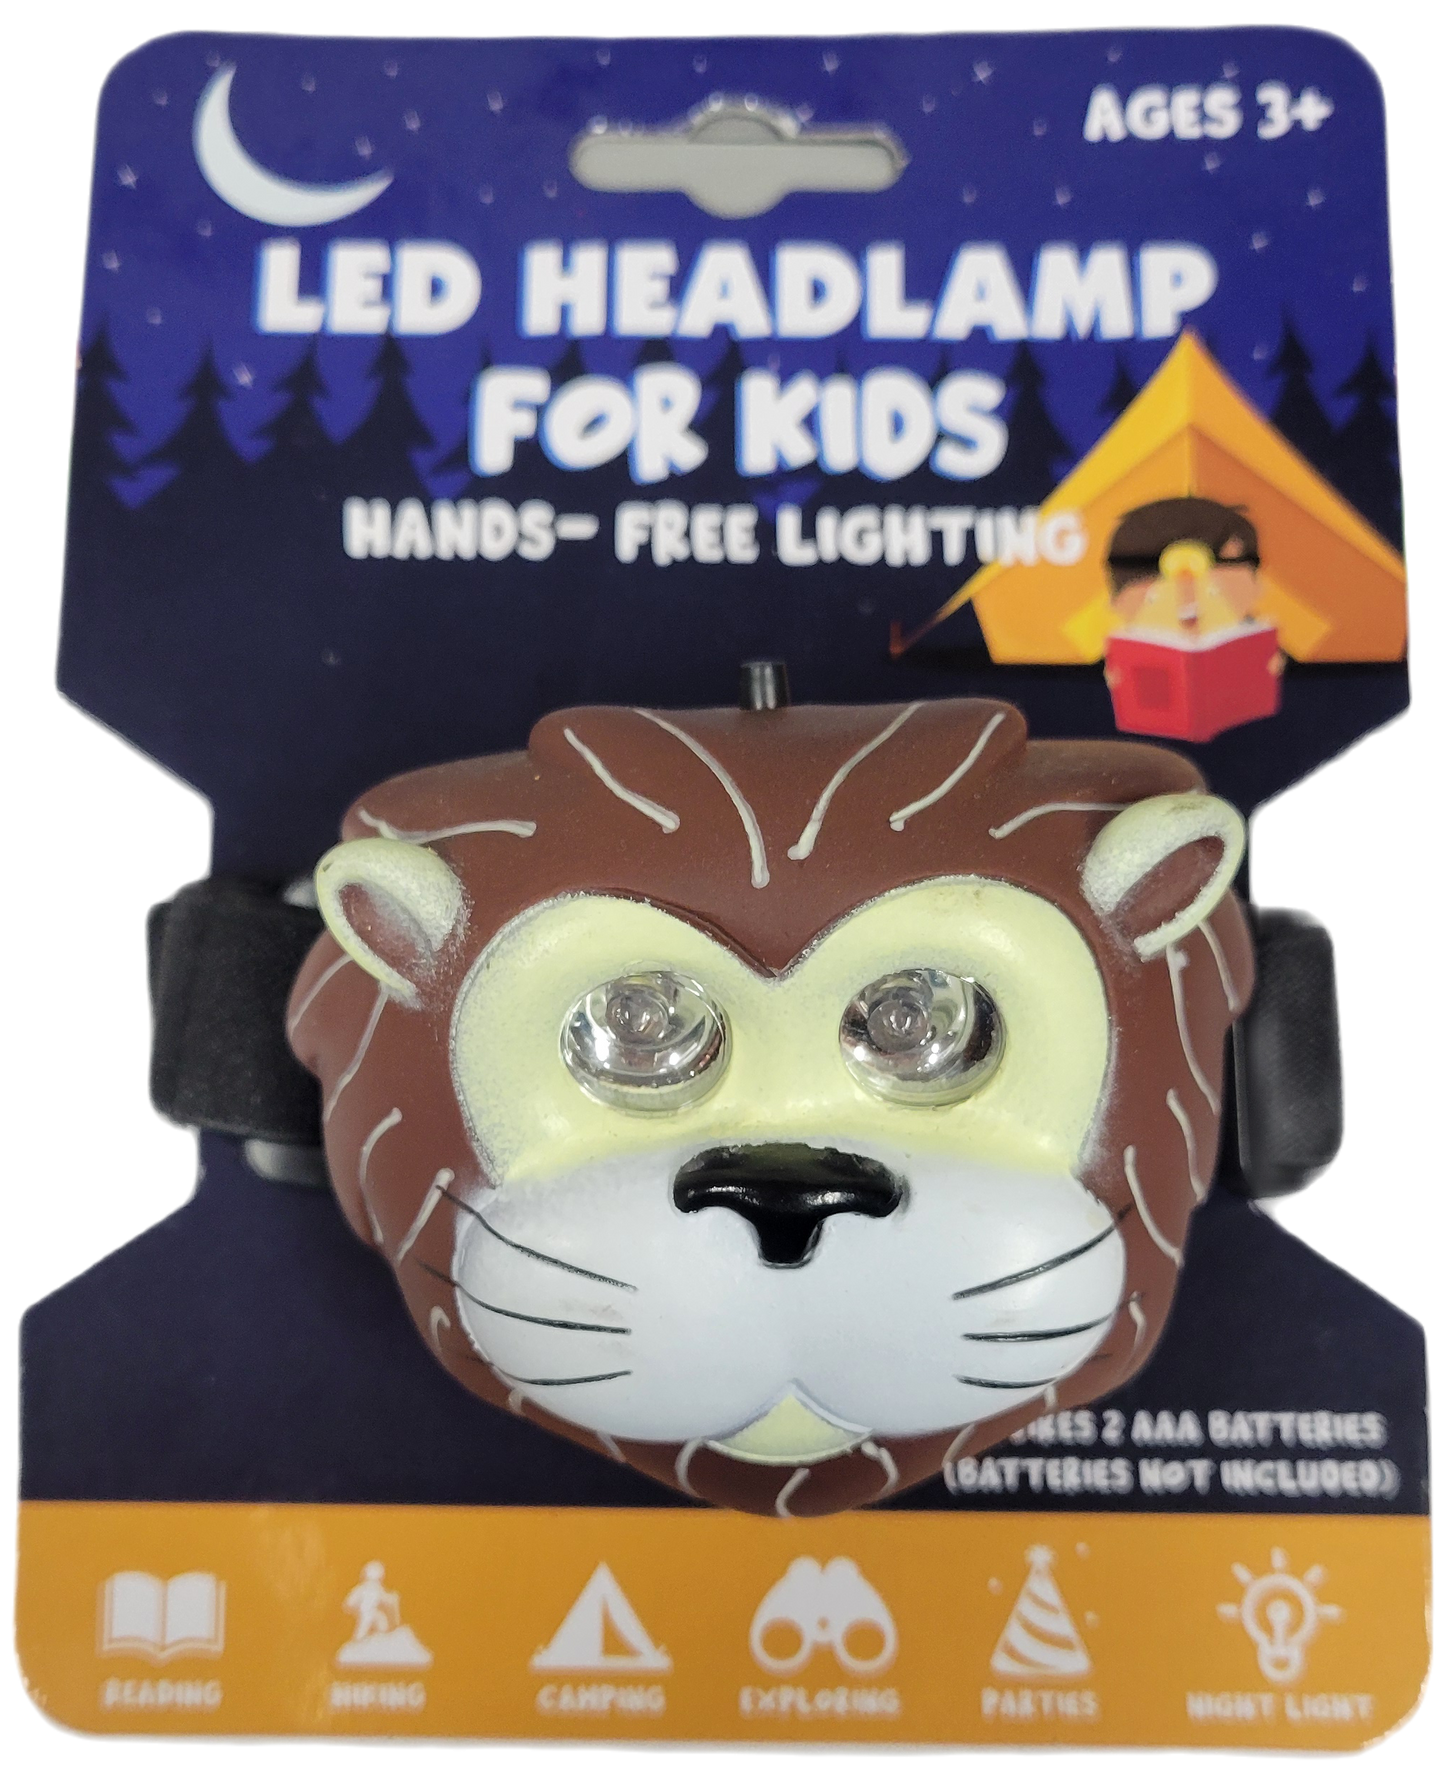 Kids Headlamp